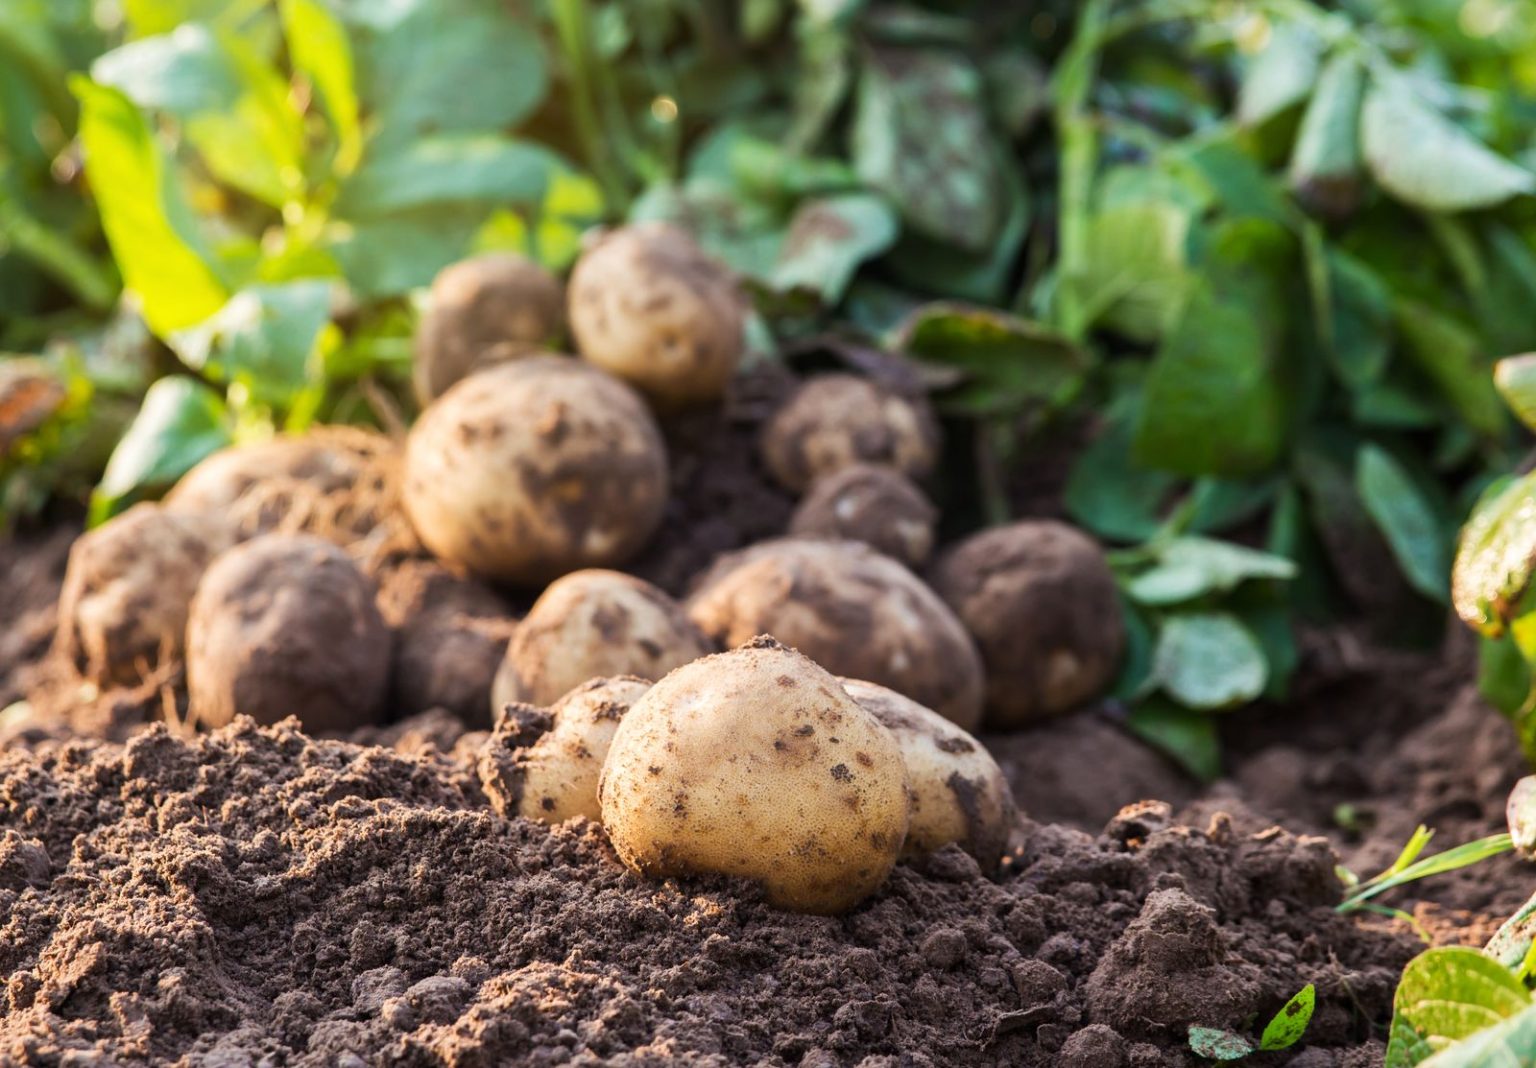 Kartoffeln düngen: Womit & wie häufig? - Plantura